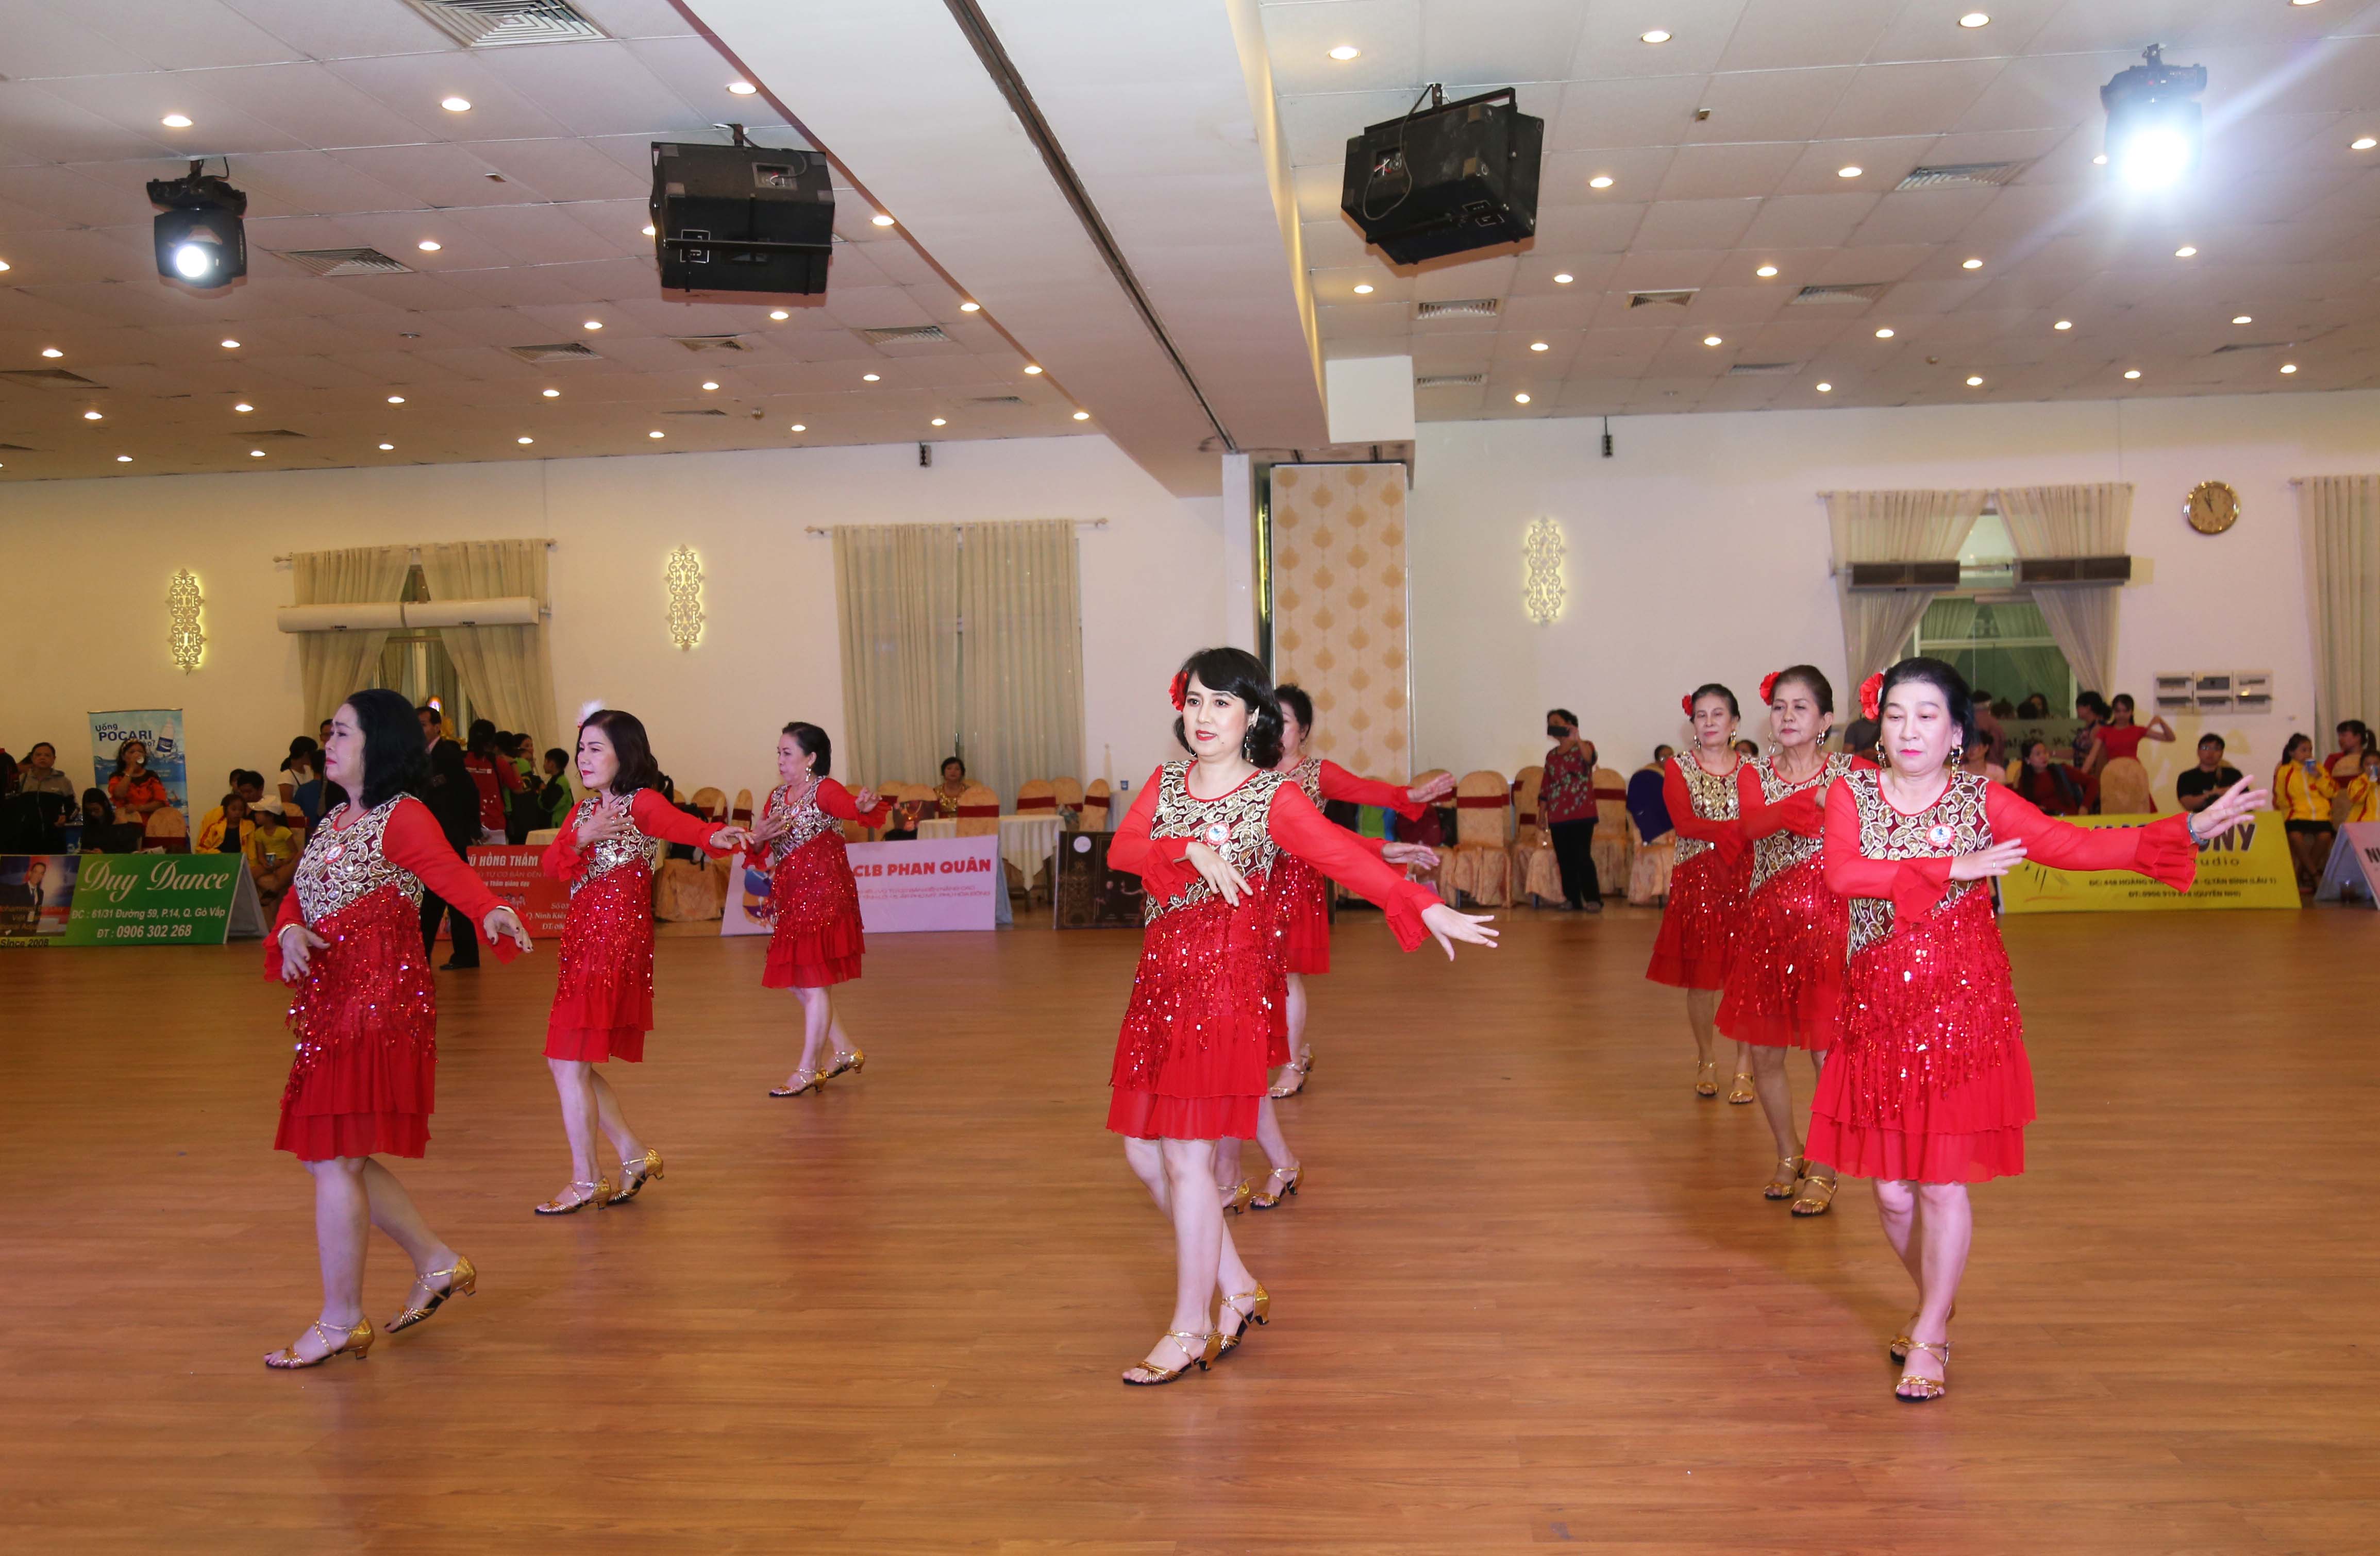 Hình ảnh: Gần 300 VĐV tham dự Giải khiêu vũ thể thao Cúp Grace Dance Mở Rộng số 7